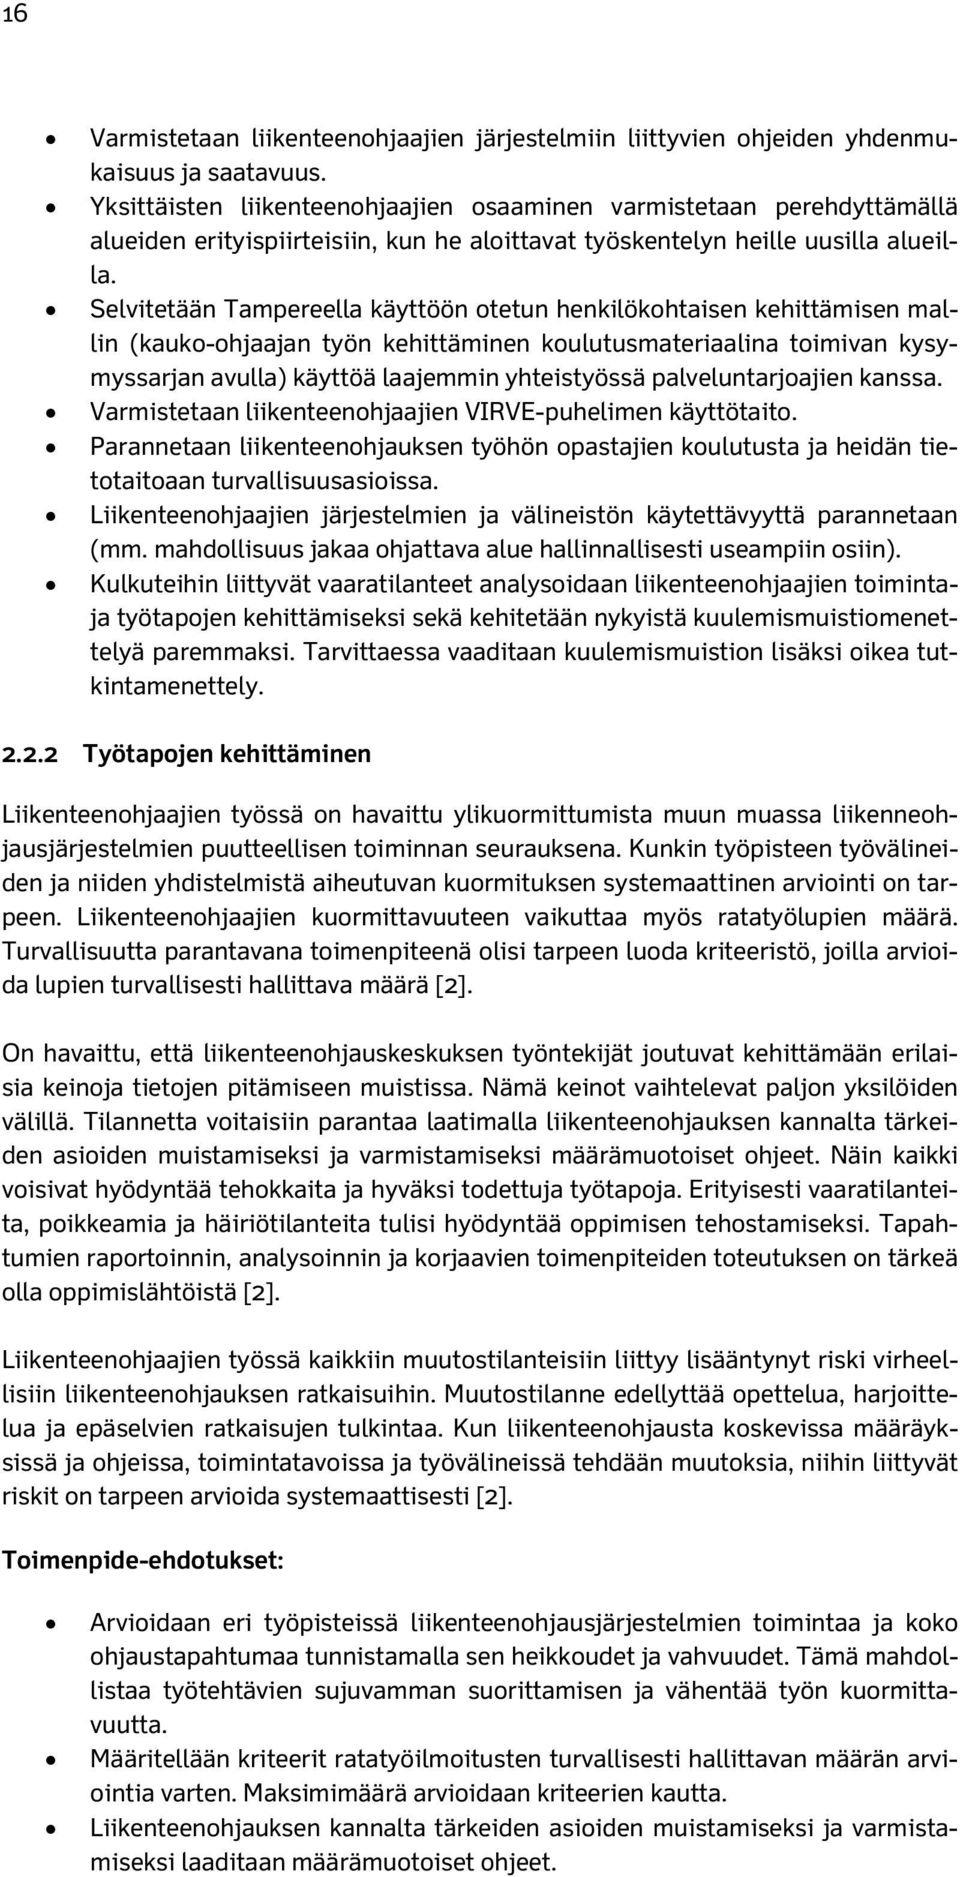 Selvitetään Tampereella käyttöön otetun henkilökohtaisen kehittämisen mallin (kauko-ohjaajan työn kehittäminen koulutusmateriaalina toimivan kysymyssarjan avulla) käyttöä laajemmin yhteistyössä